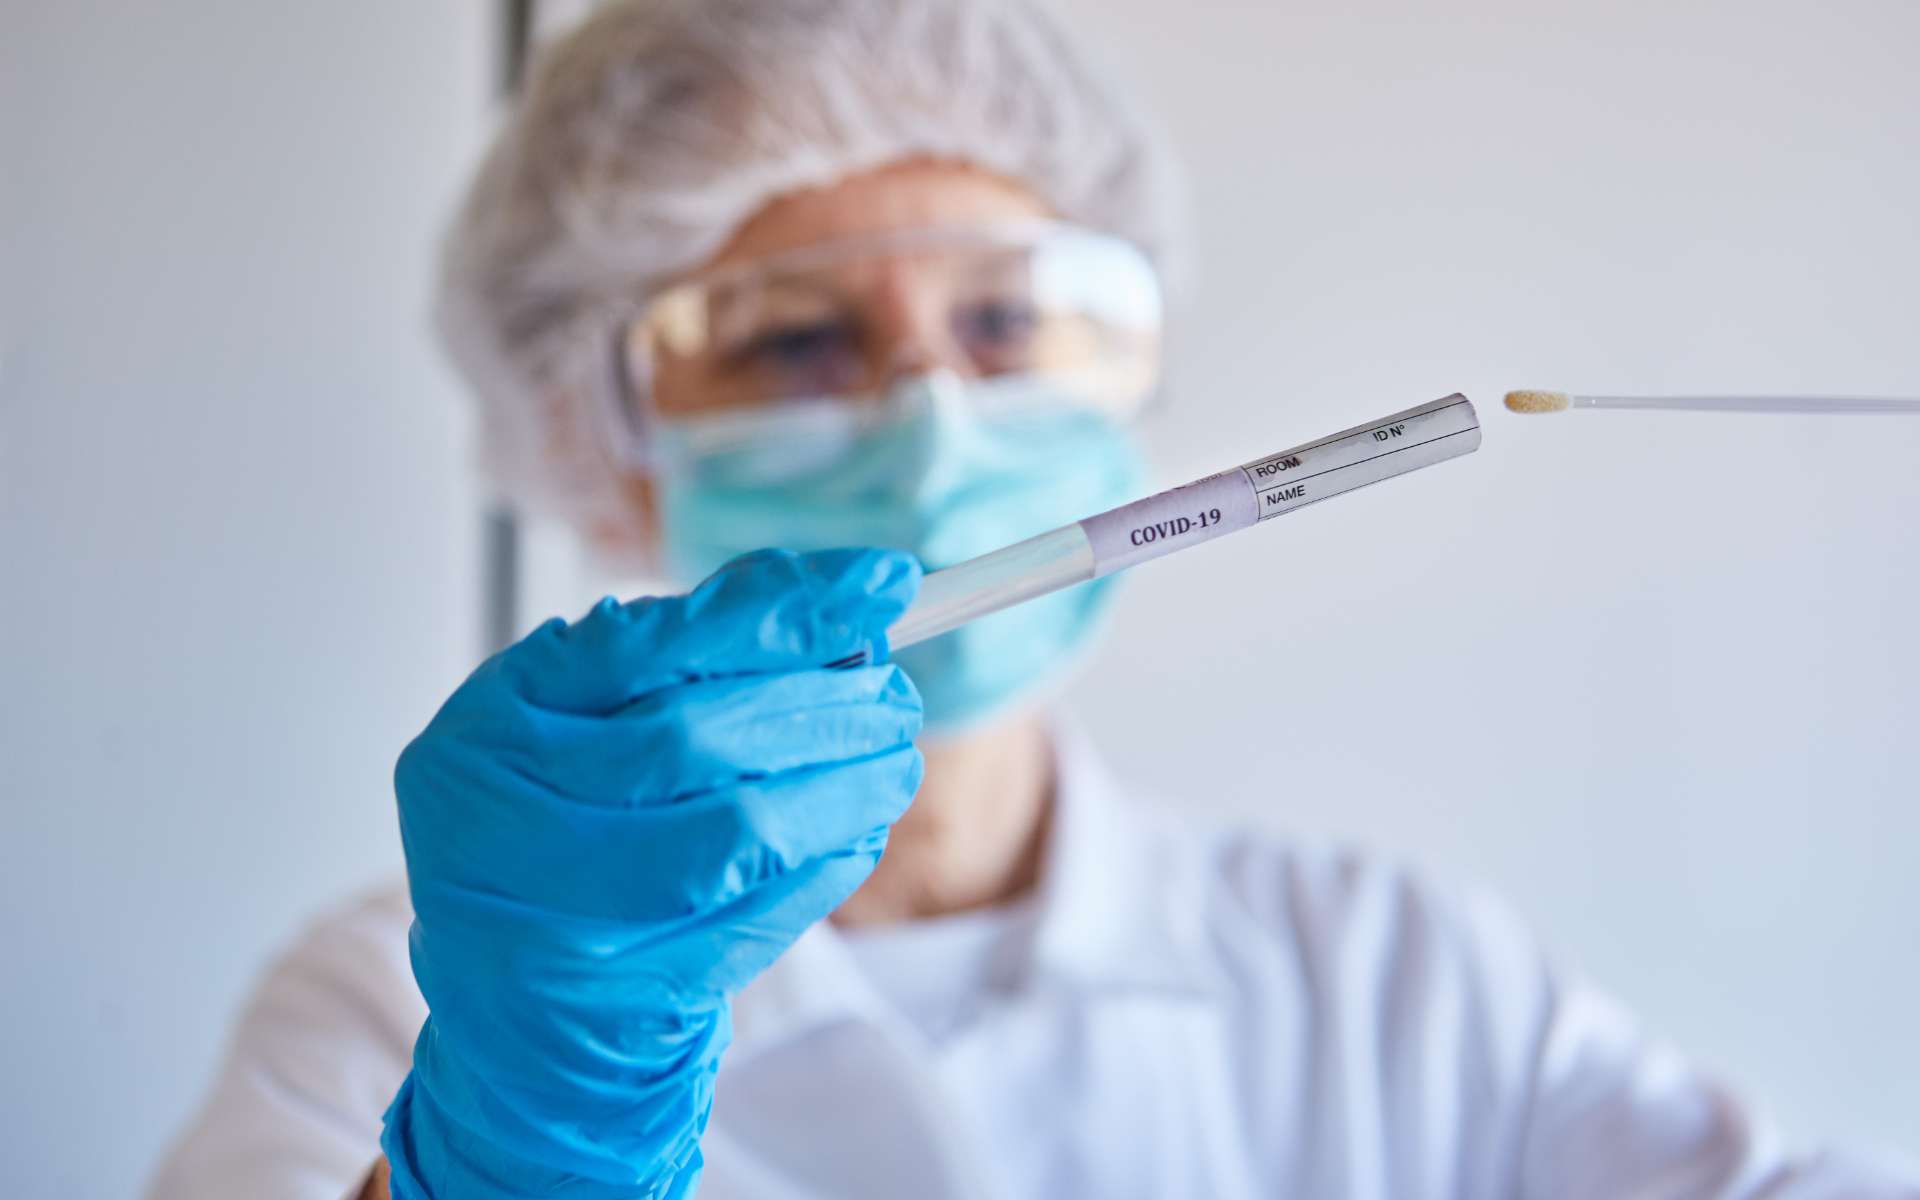 Le test PCR est réalisé pour dépister le coronavirus à partir d'un écouvillon nasopharyngée. © Robert Kneschke, Adobe Stock